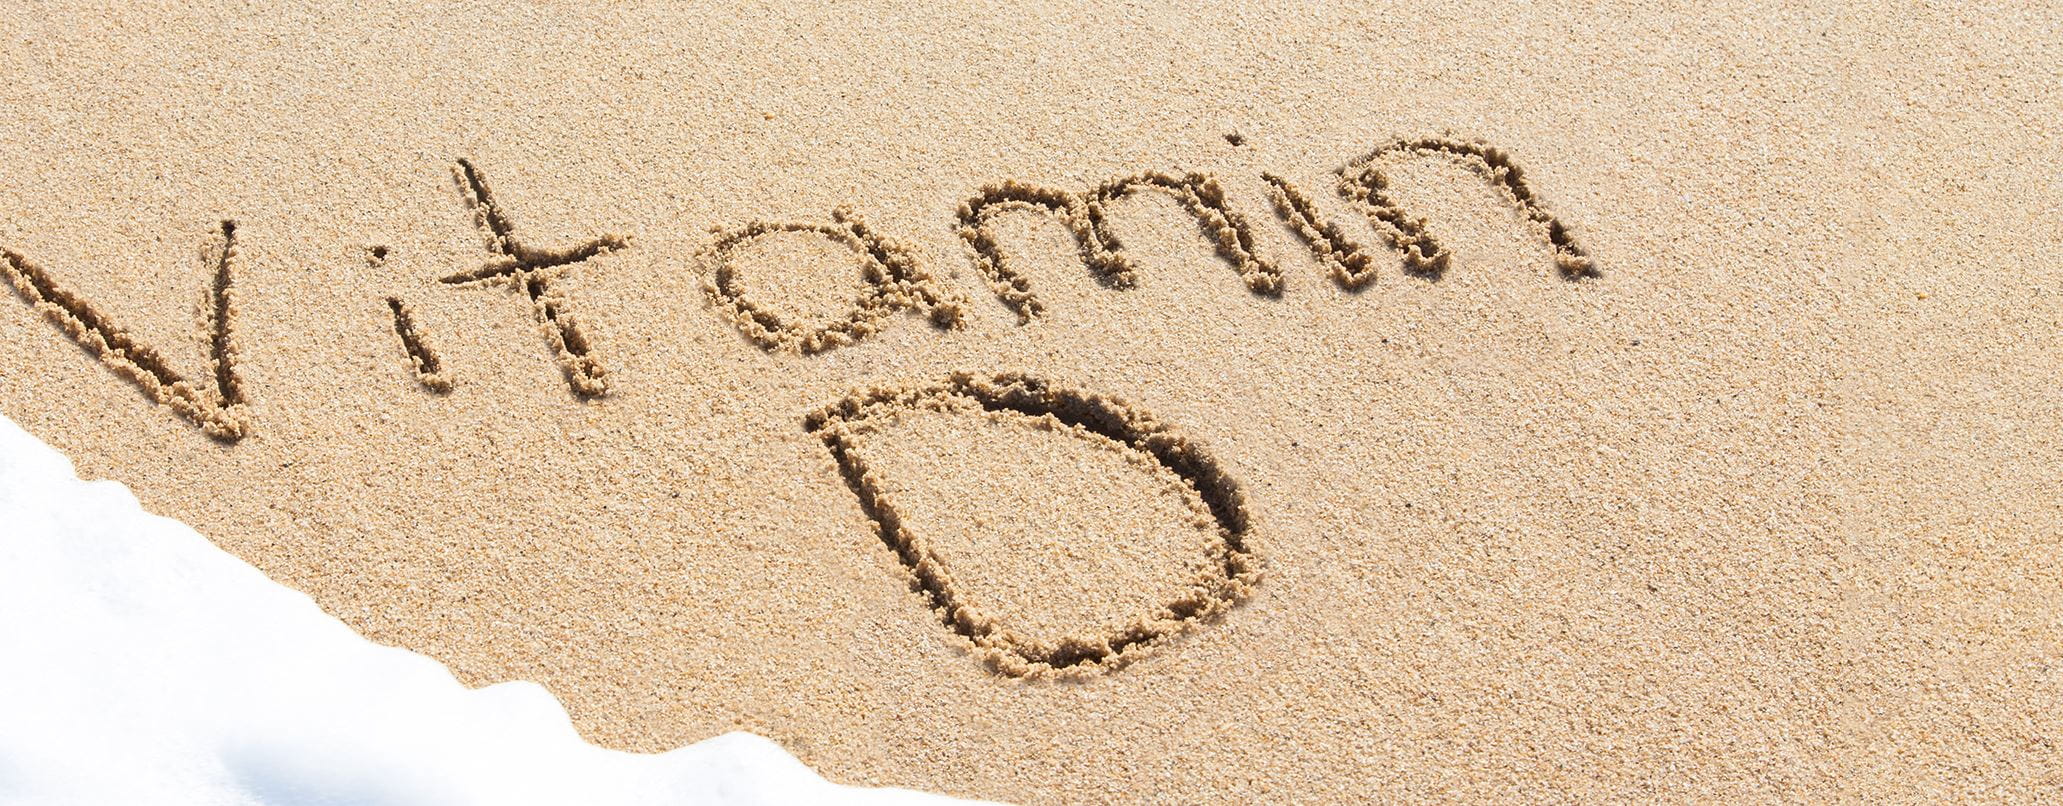 Vitamina D escrito na areia